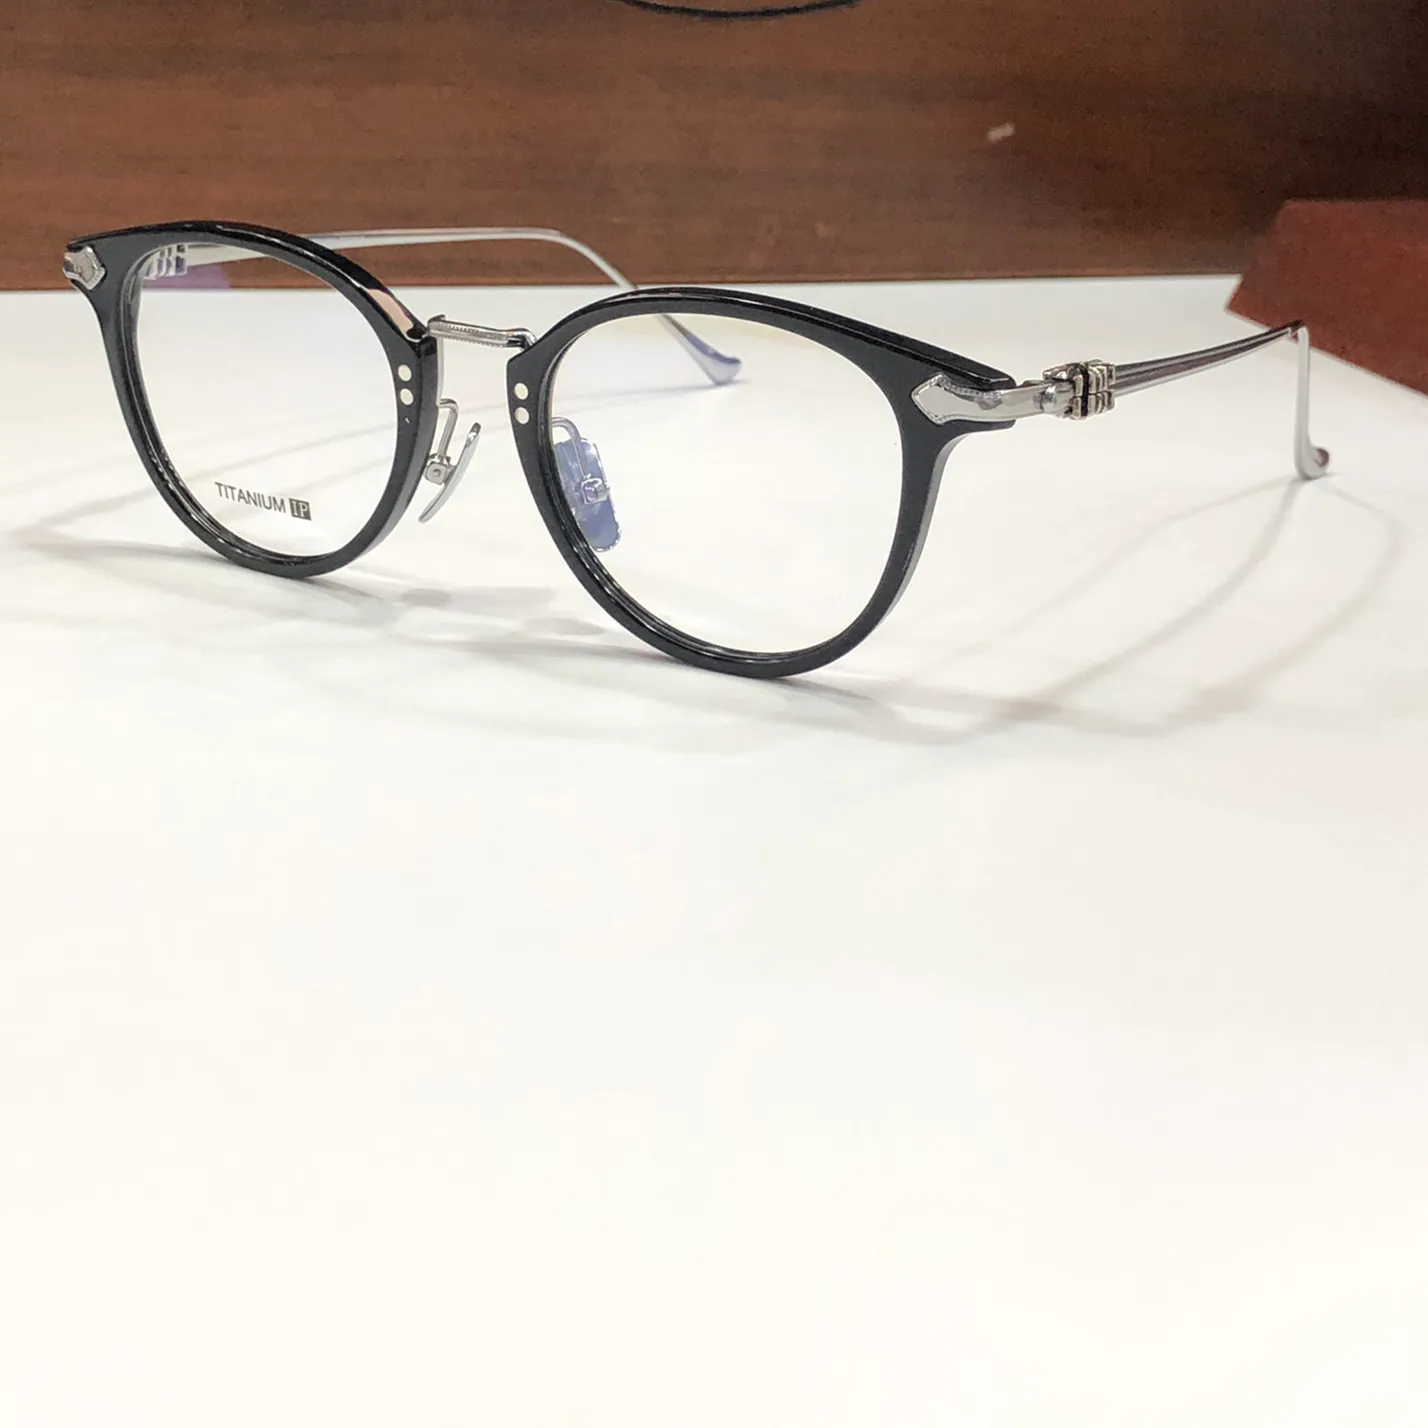 Fanx Huney lunettes lunettes argent noir cadre clair lentille hommes femmes mode lunettes de soleil montures lunettes avec boîte